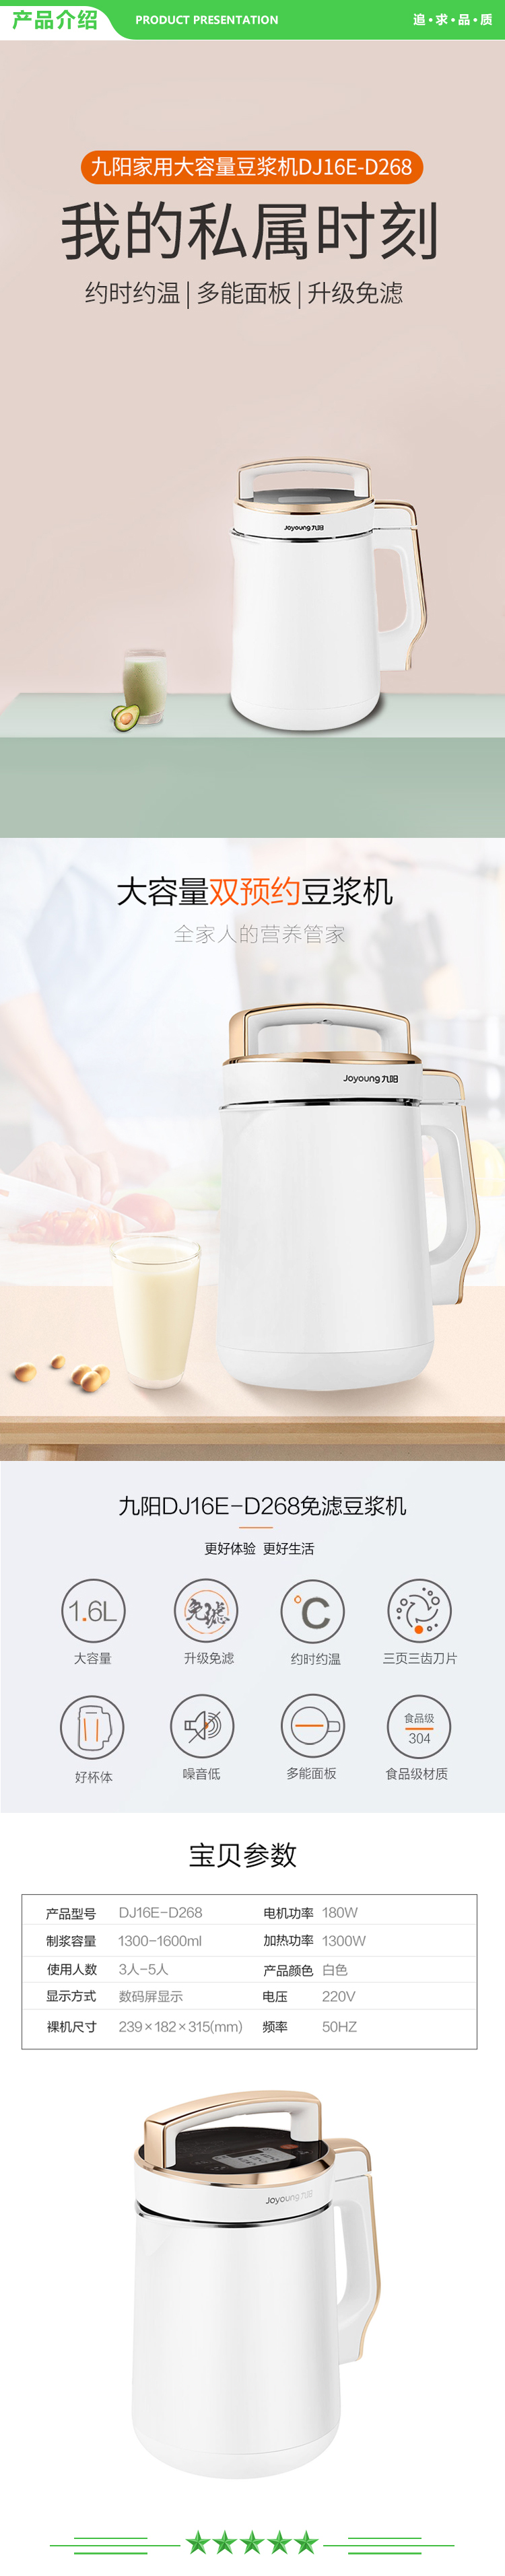 九阳 Joyoung DJ16E-D268 ZMD安心系列豆浆机 1.3-1.6L免过滤大容量家用多功能.jpg